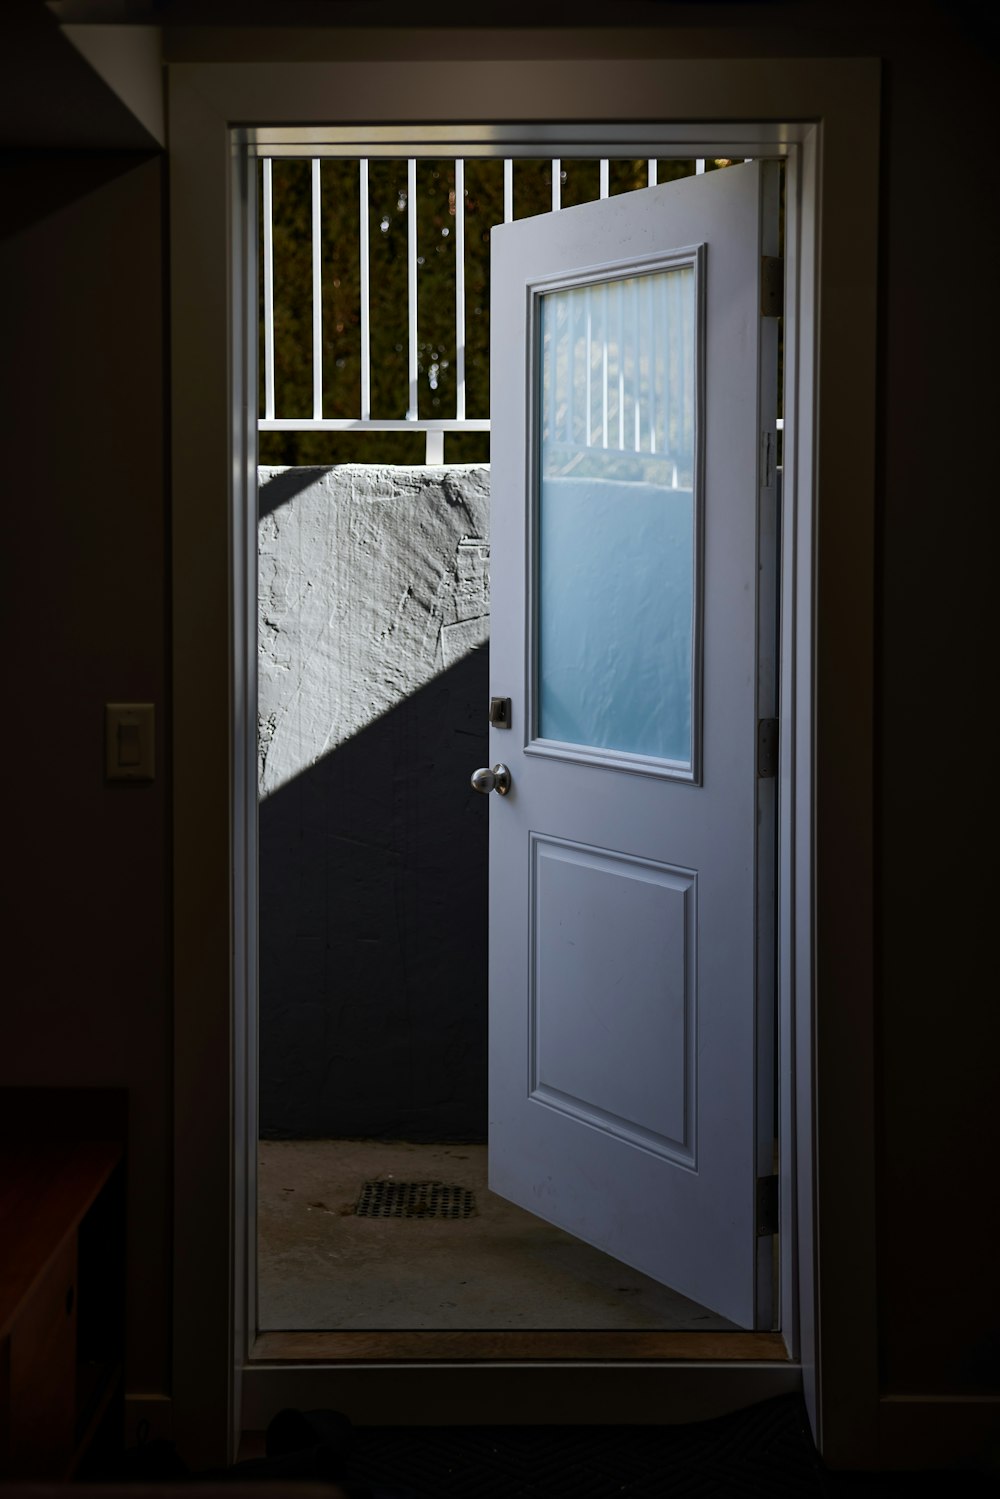 a white door is open in a dark room